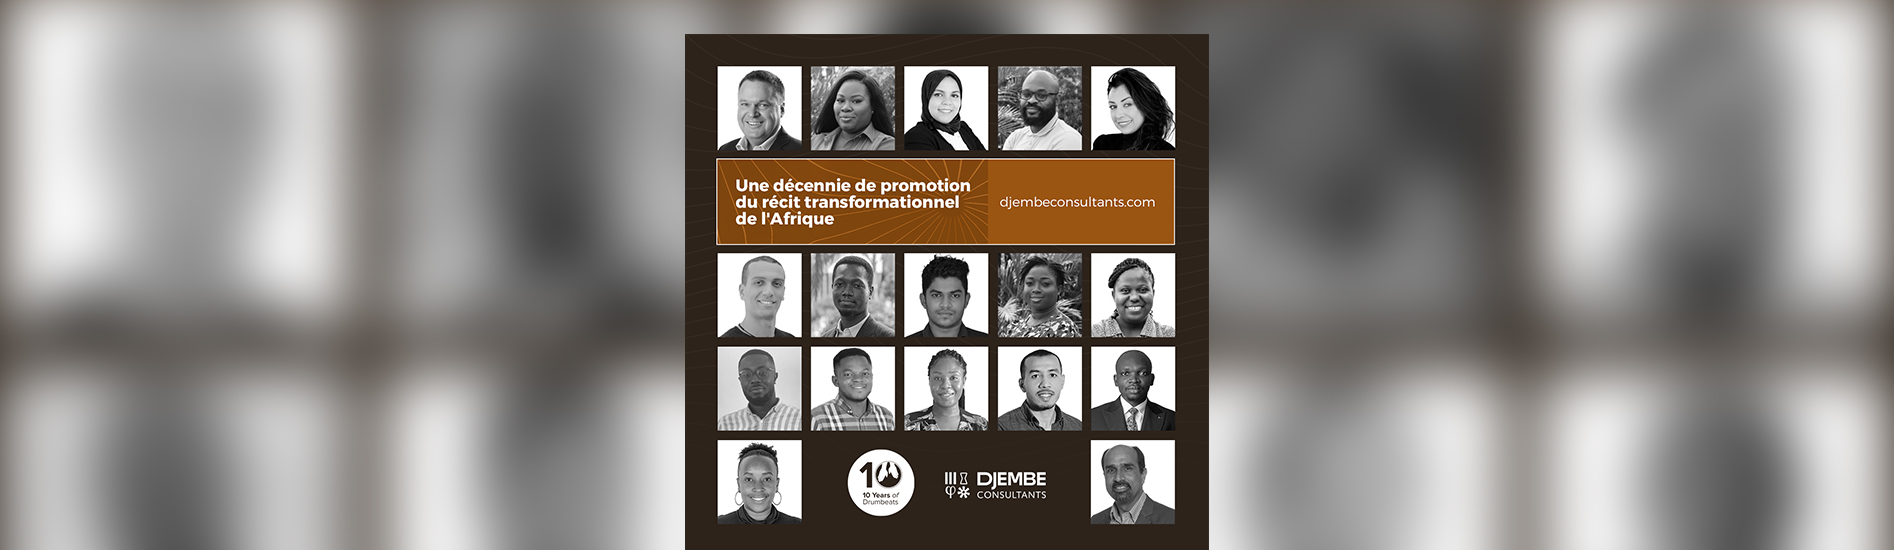 Djembe Consultants Annonce la Campagne de Célébration de son 10ème Anniversaire